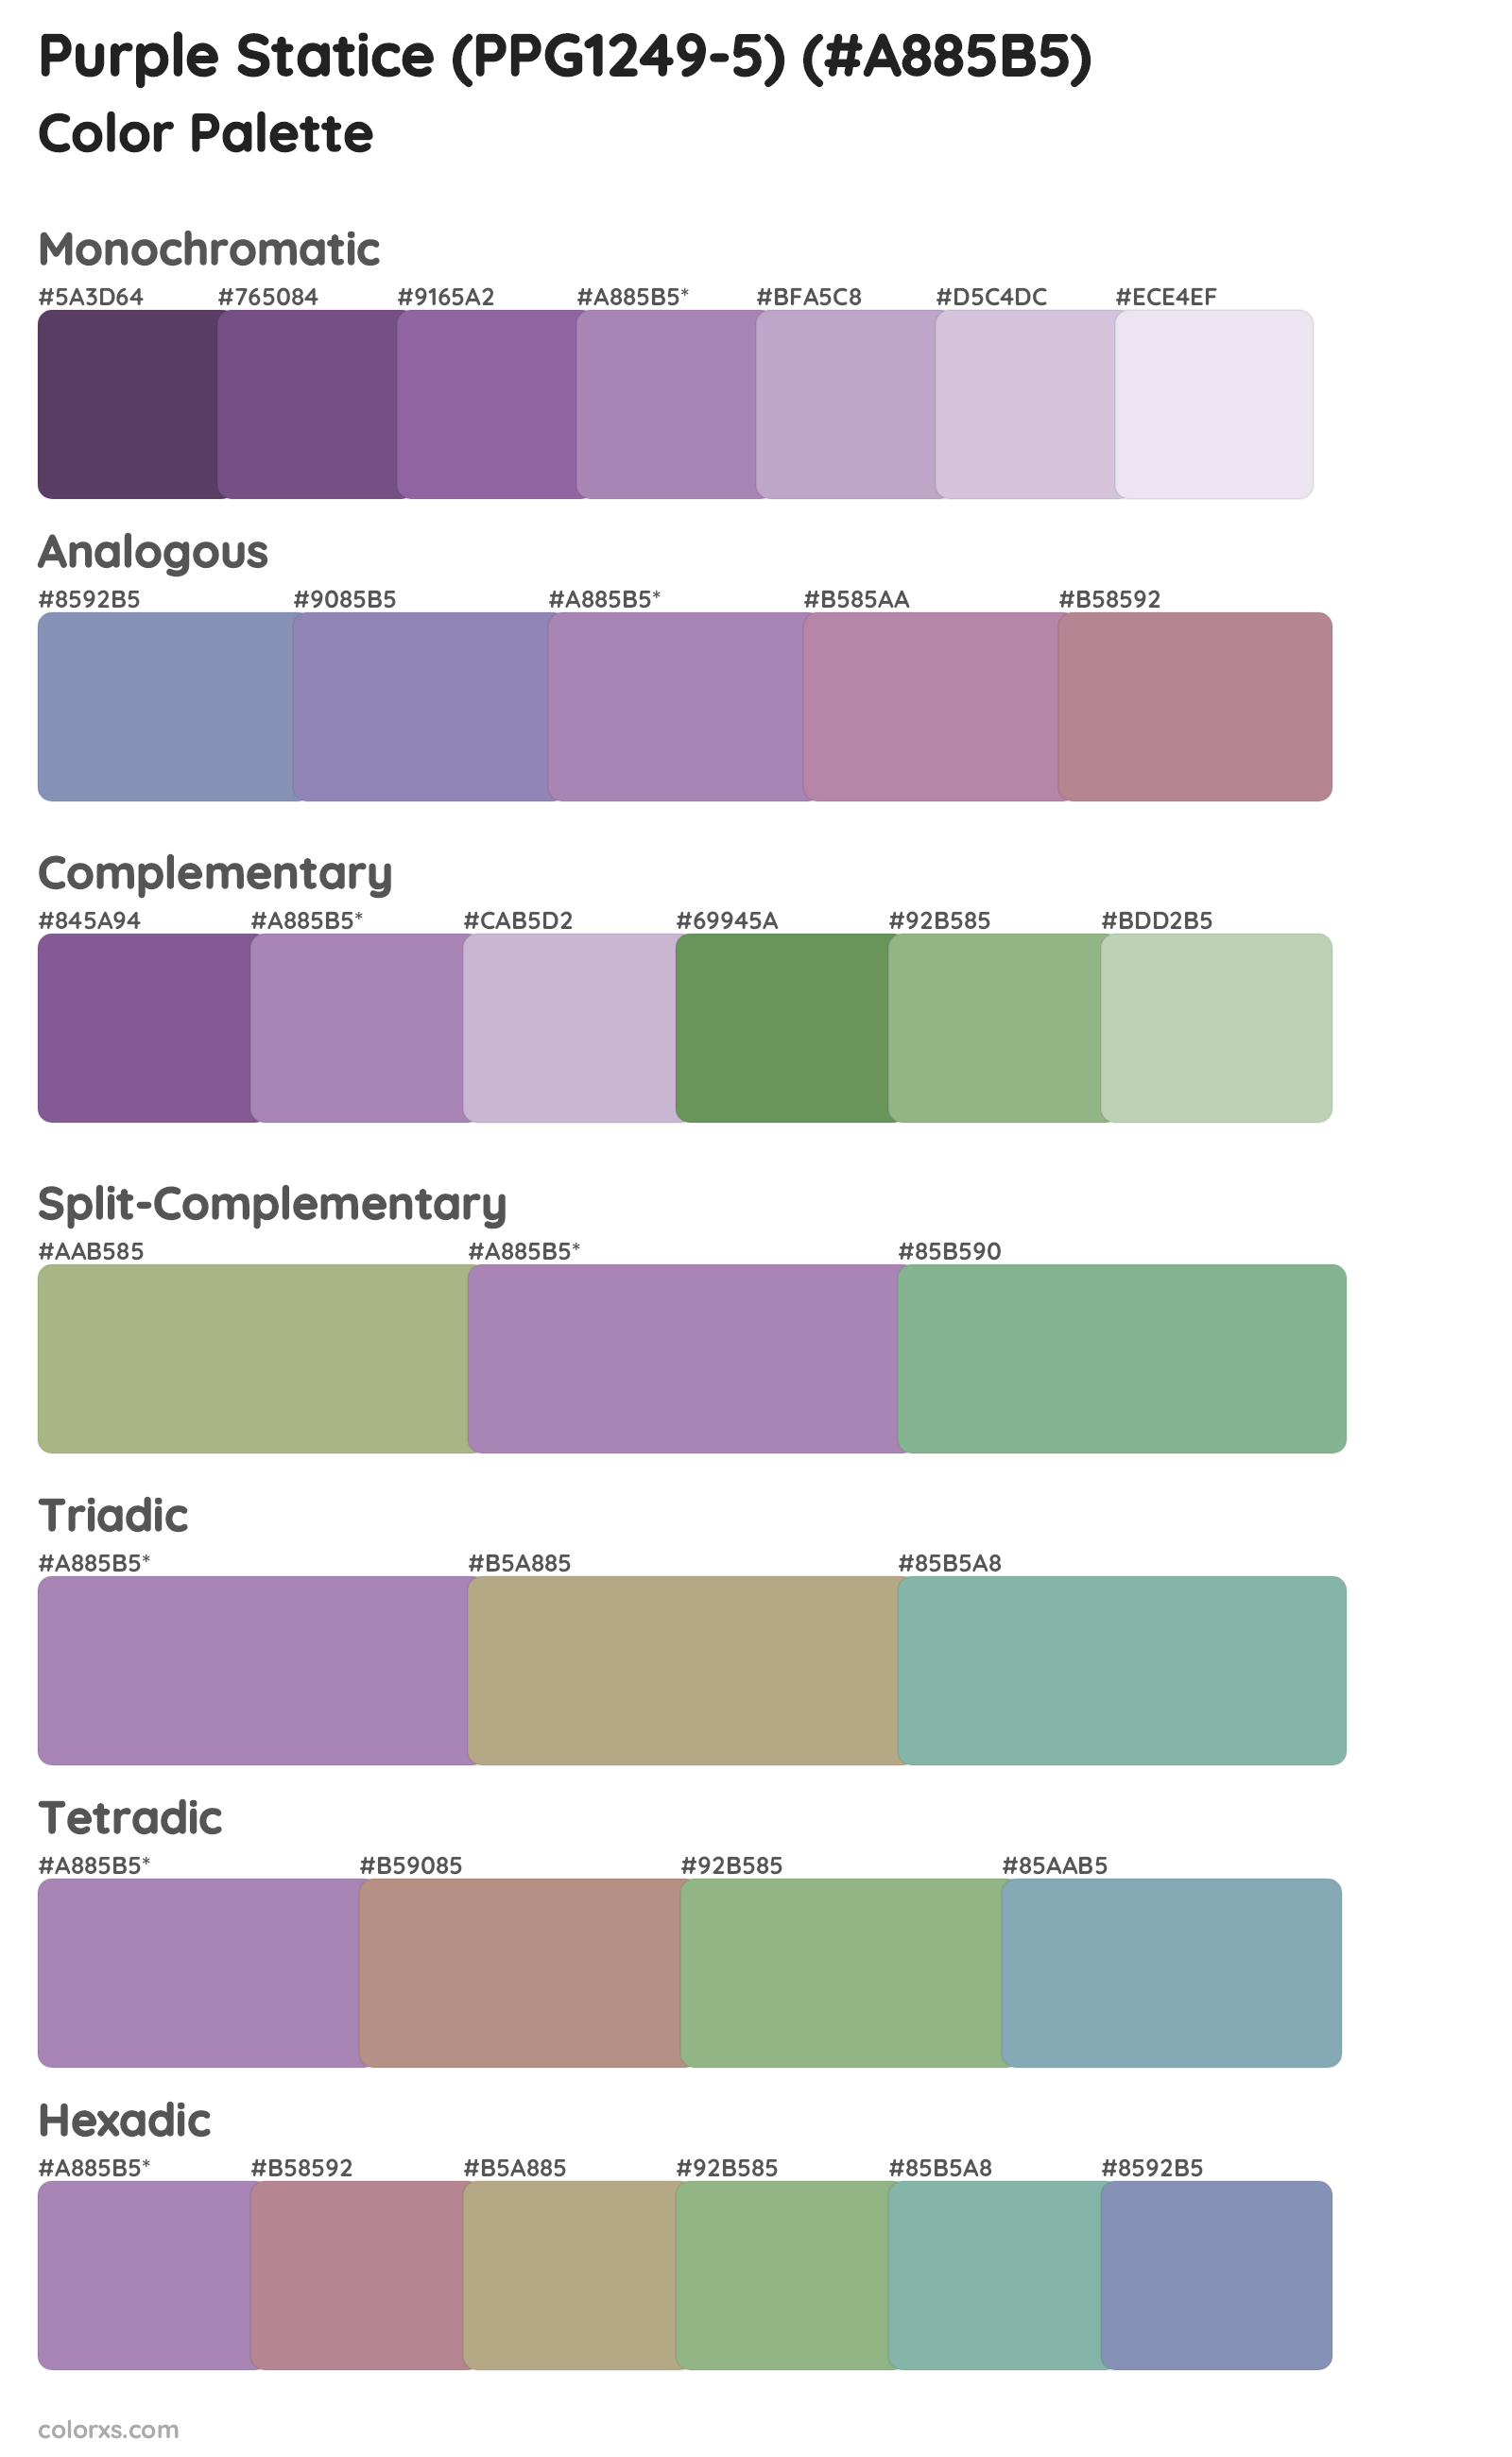 Purple Statice (PPG1249-5) Color Scheme Palettes